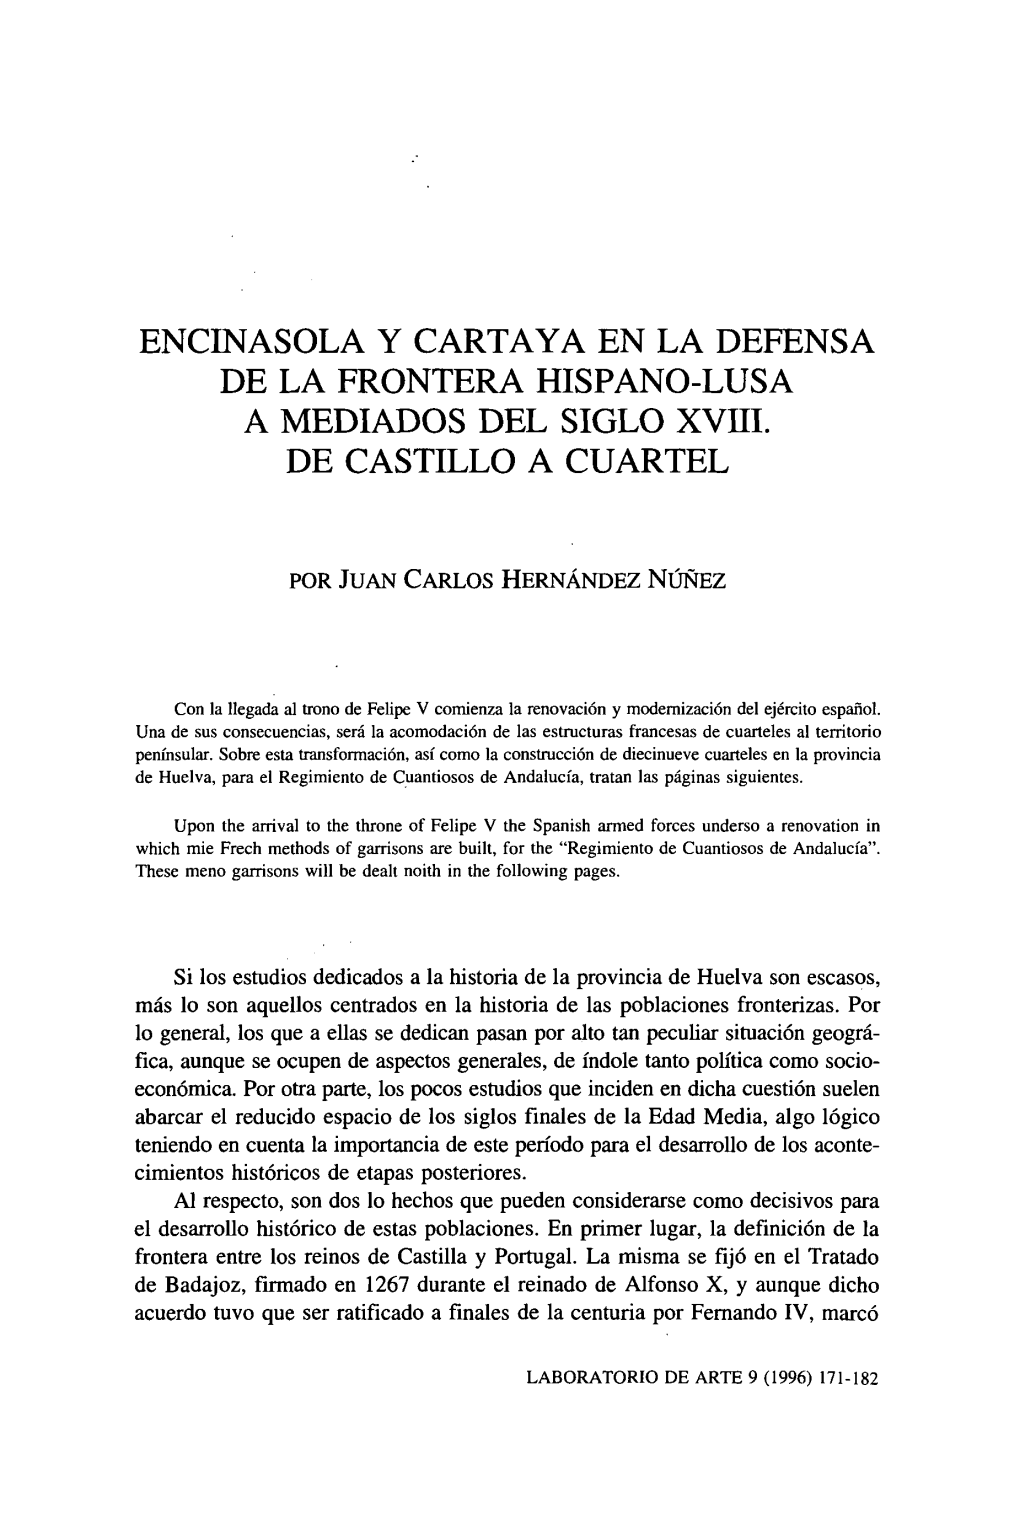 Encinasola Y Cartaya En La Defensa De La Frontera Hispano-Lusa a Mediados Del Siglo Xviii